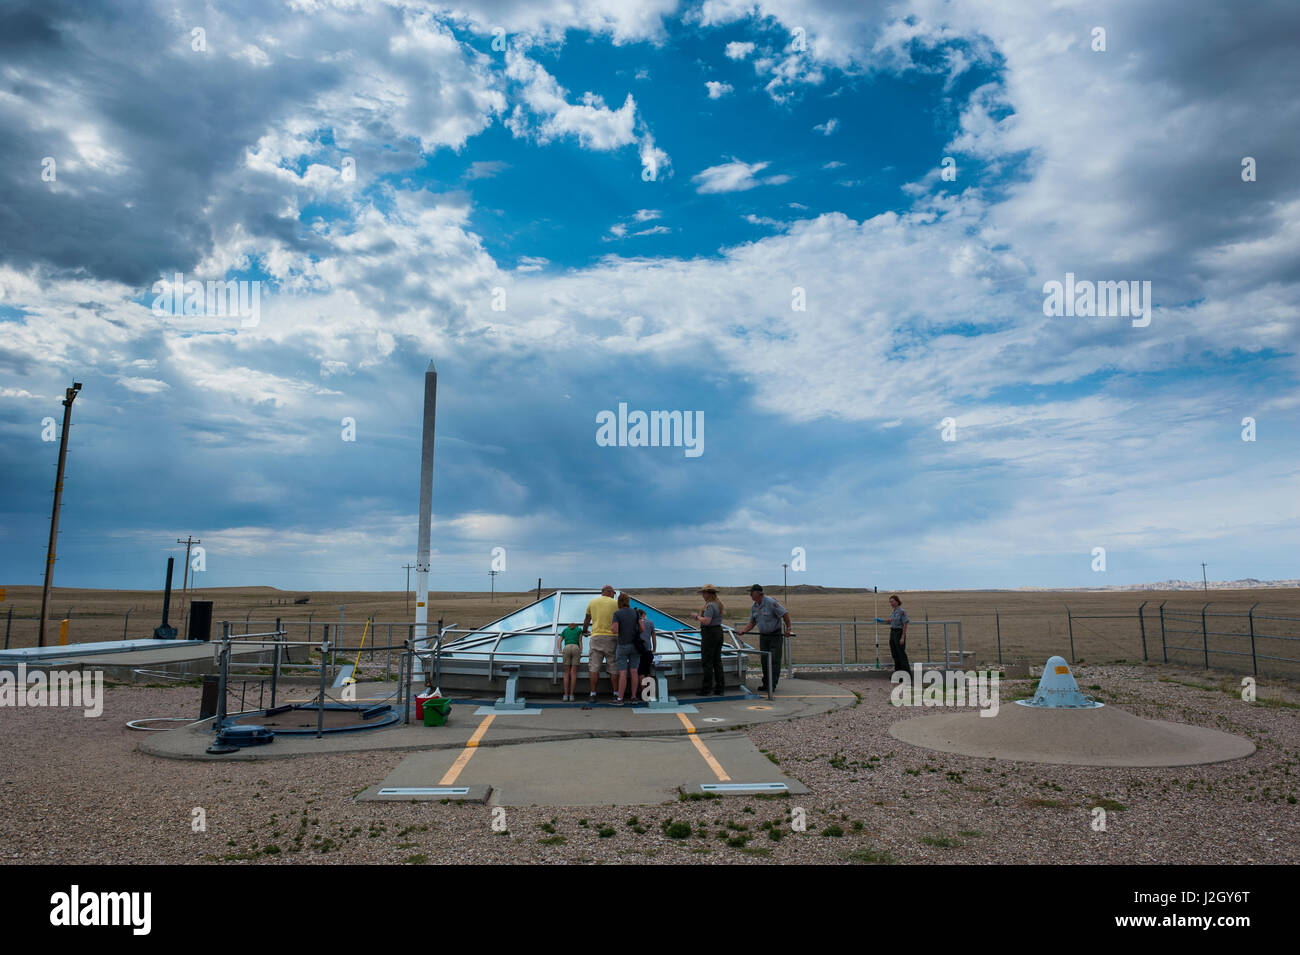 Missile atomique souterrain au site de missiles nucléaires Minuteman, South Dakota, USA Banque D'Images